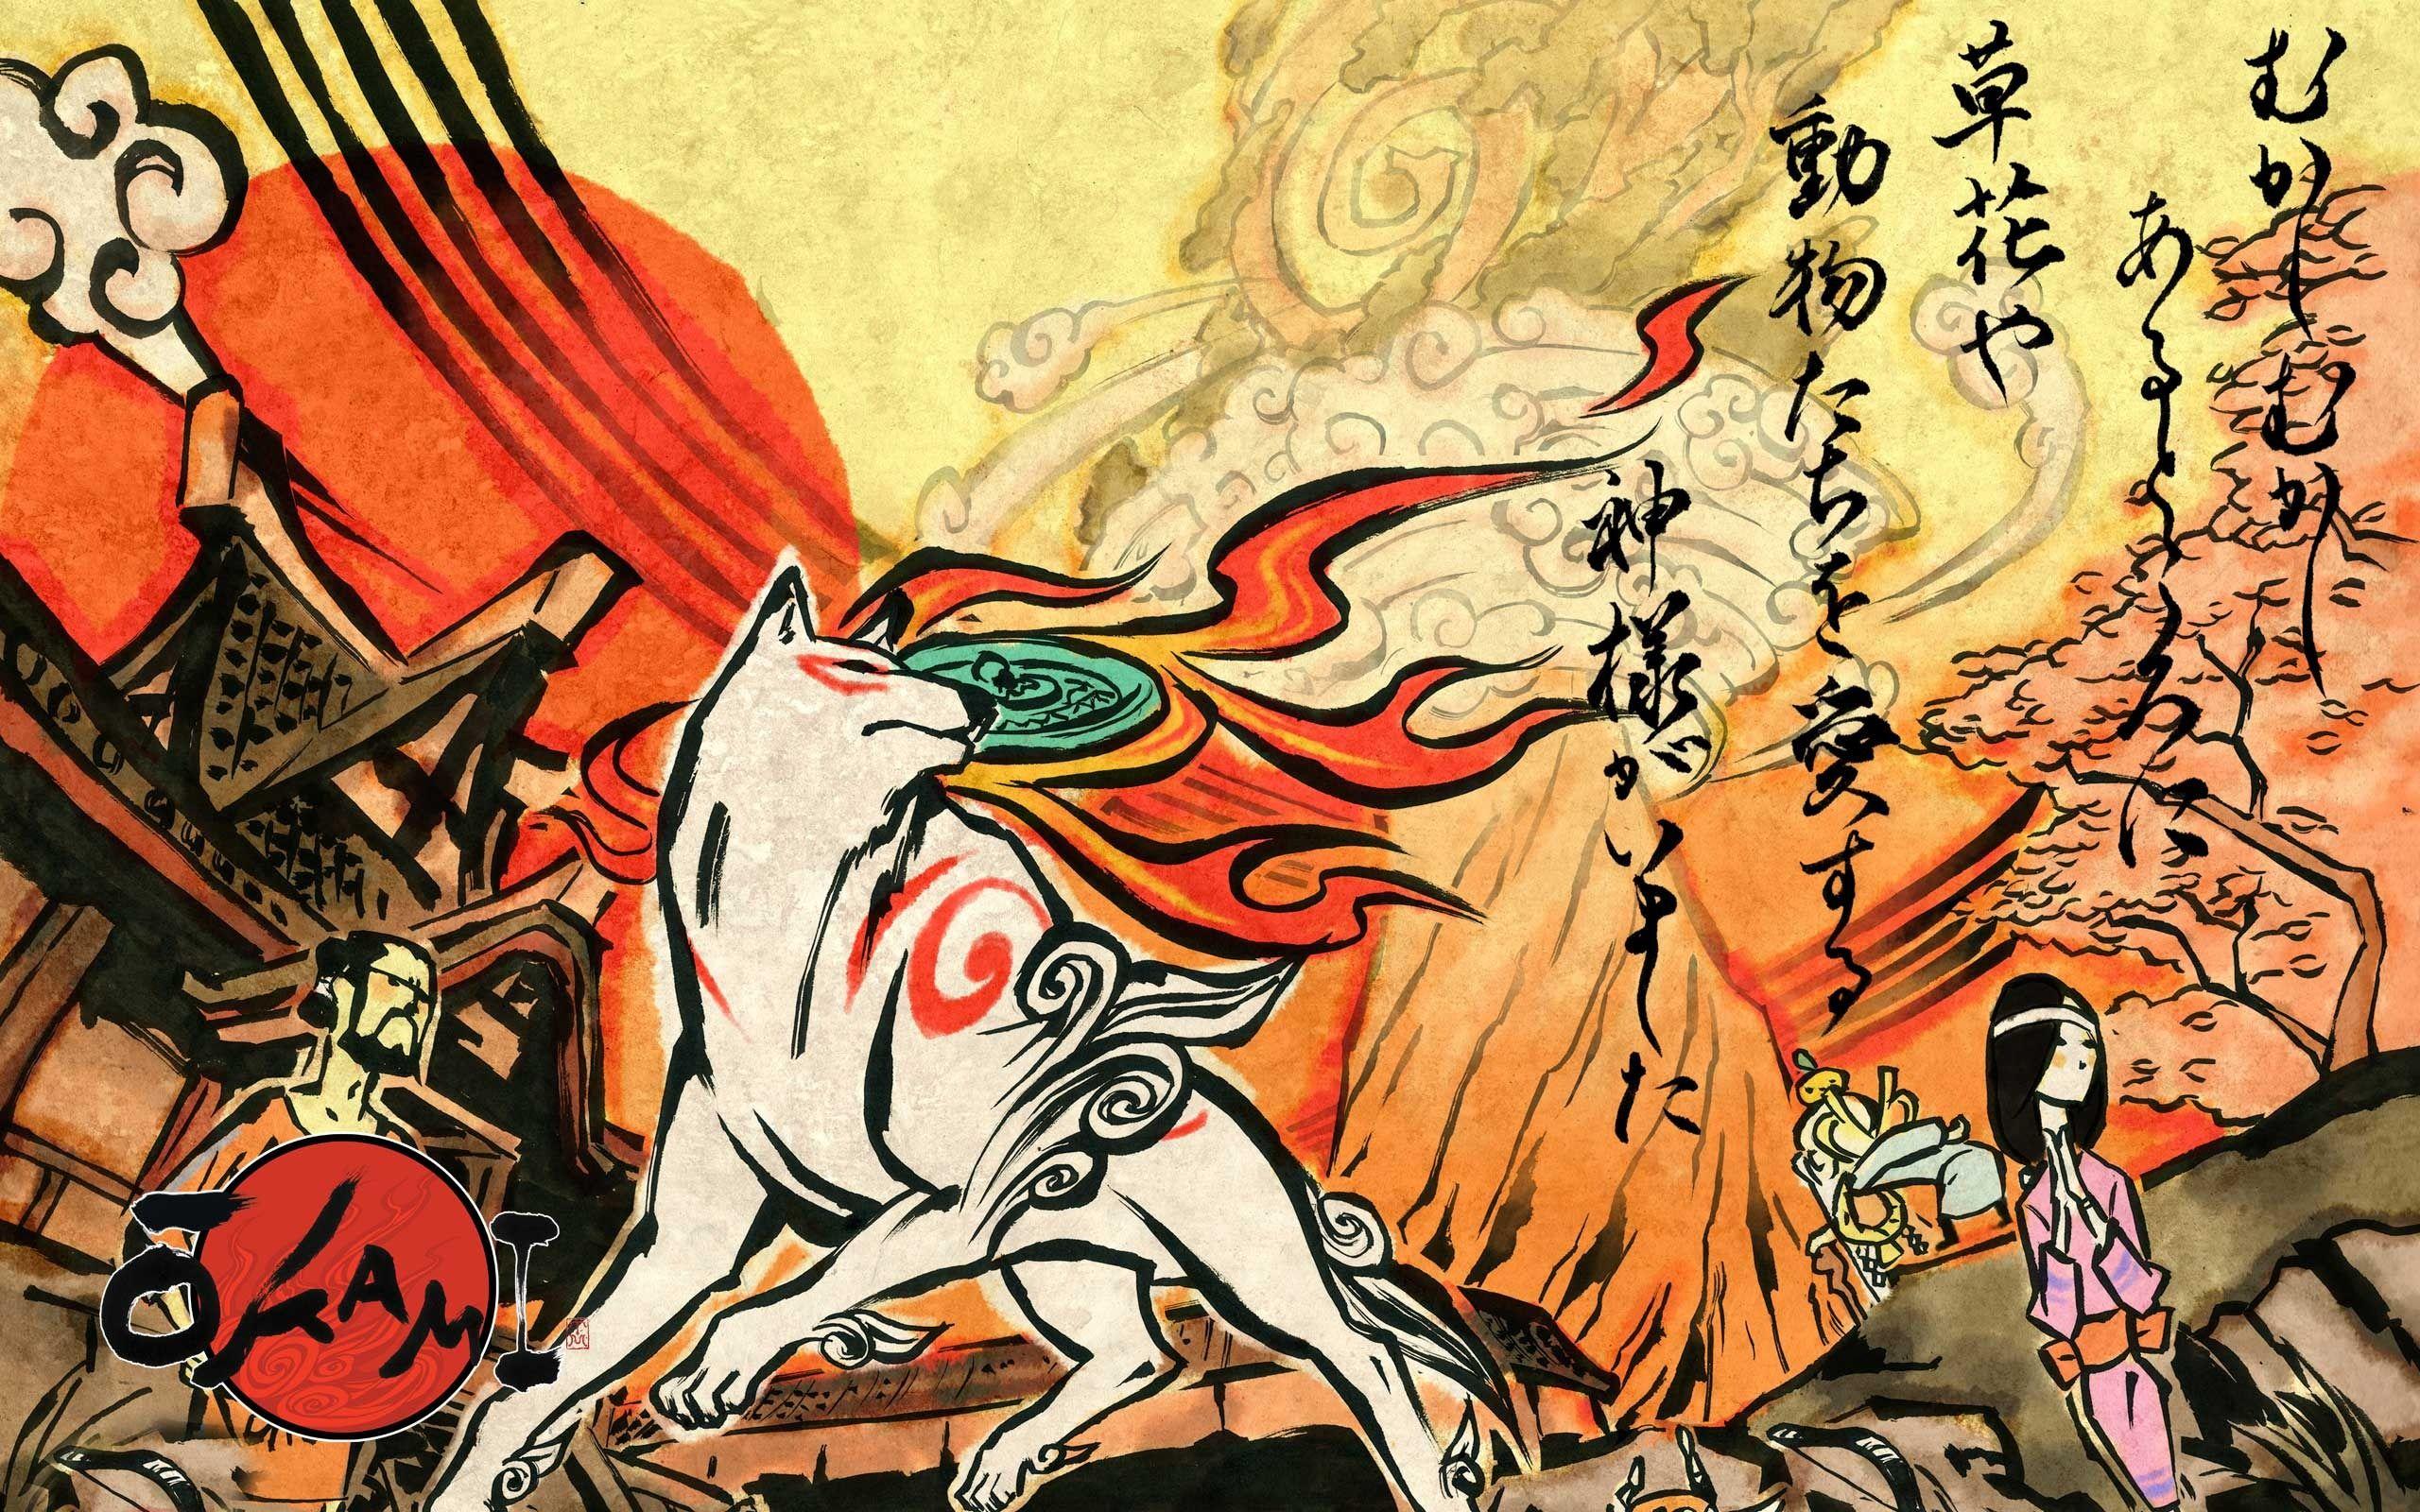 Japanese Mythology Wallpapers Top Free Japanese Mythology Images, Photos, Reviews